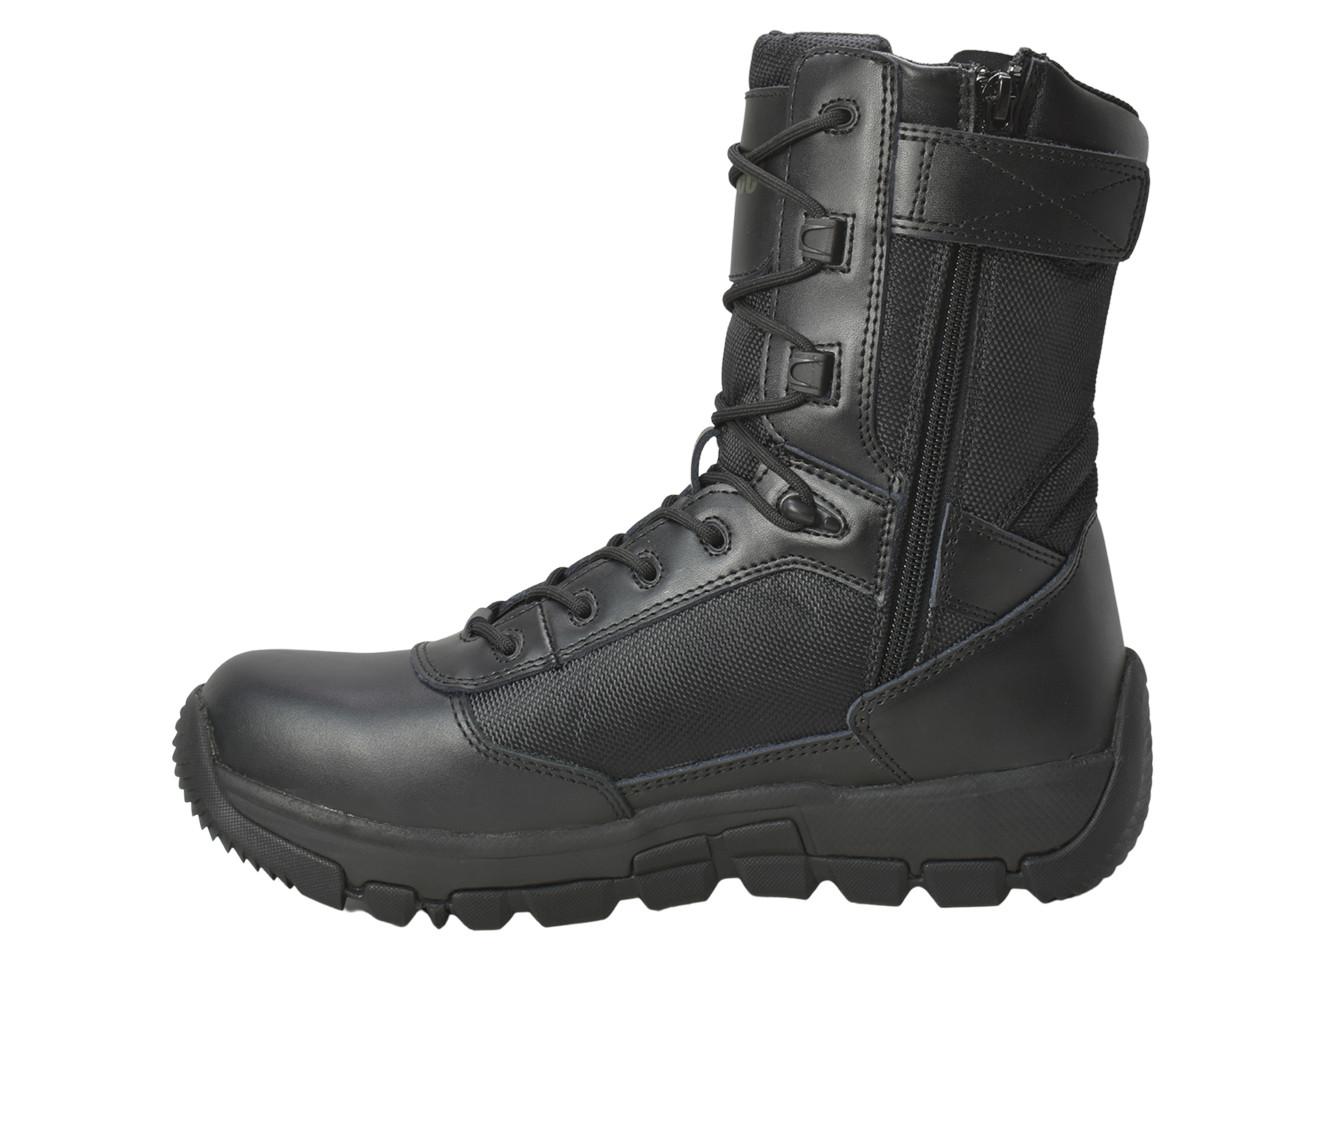 Men's AdTec Men's 9" Side Zip Waterproof Tactical Work Boots